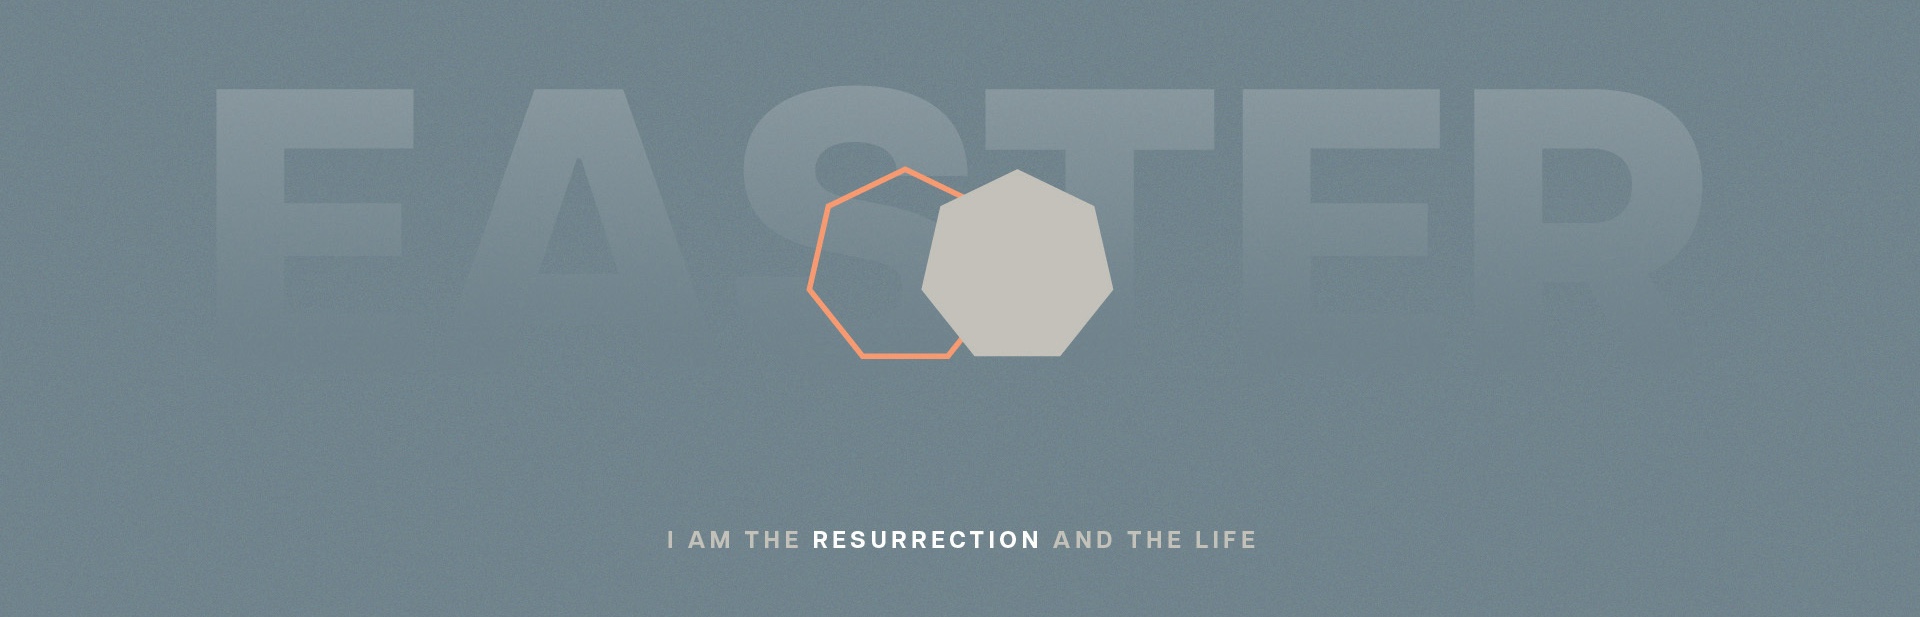 高峰教会的复活节--我就是复活和生命